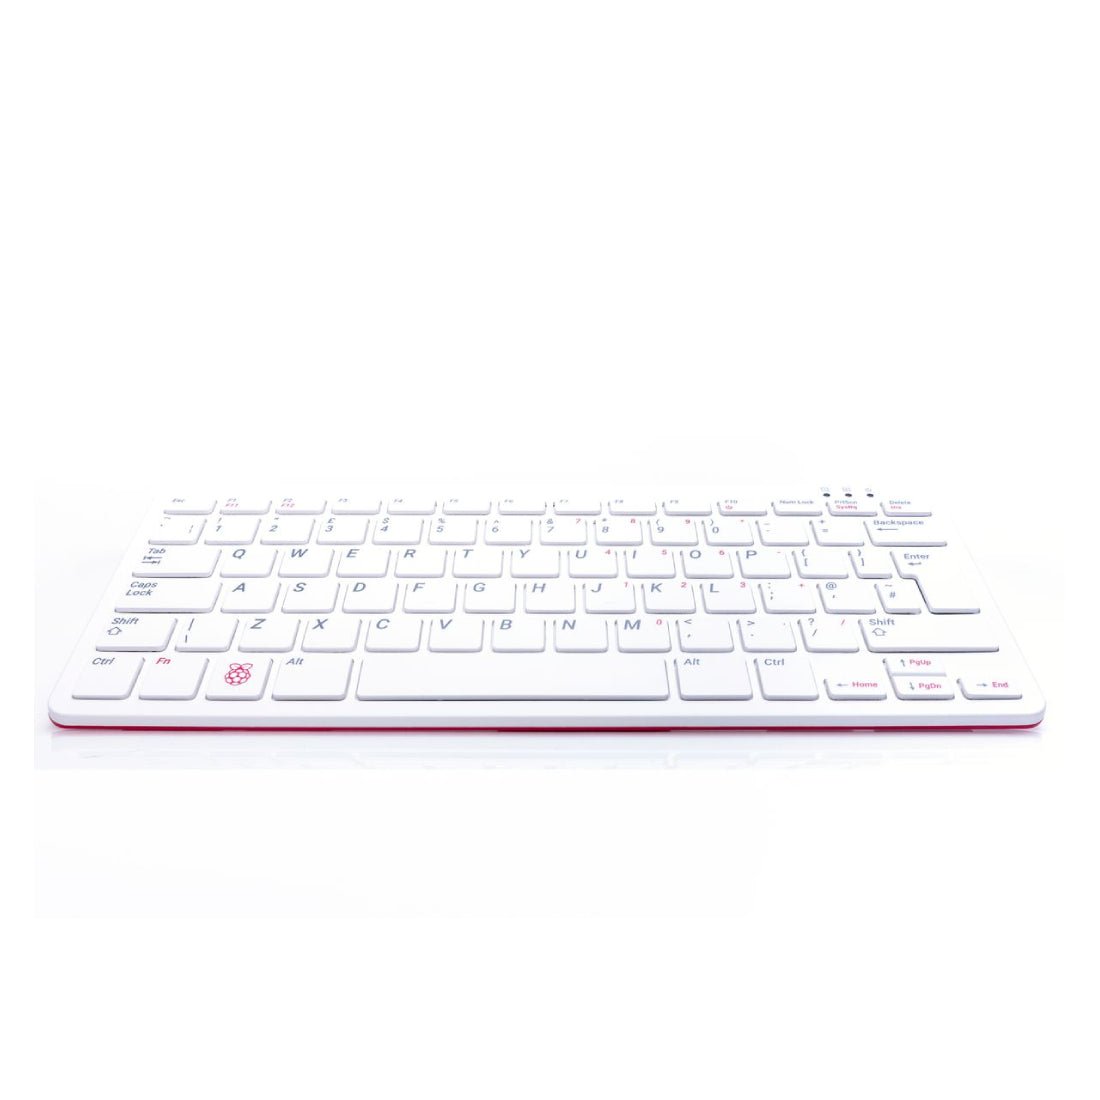 Raspberry Pi 400 Keyboard - Store 974 | ستور ٩٧٤